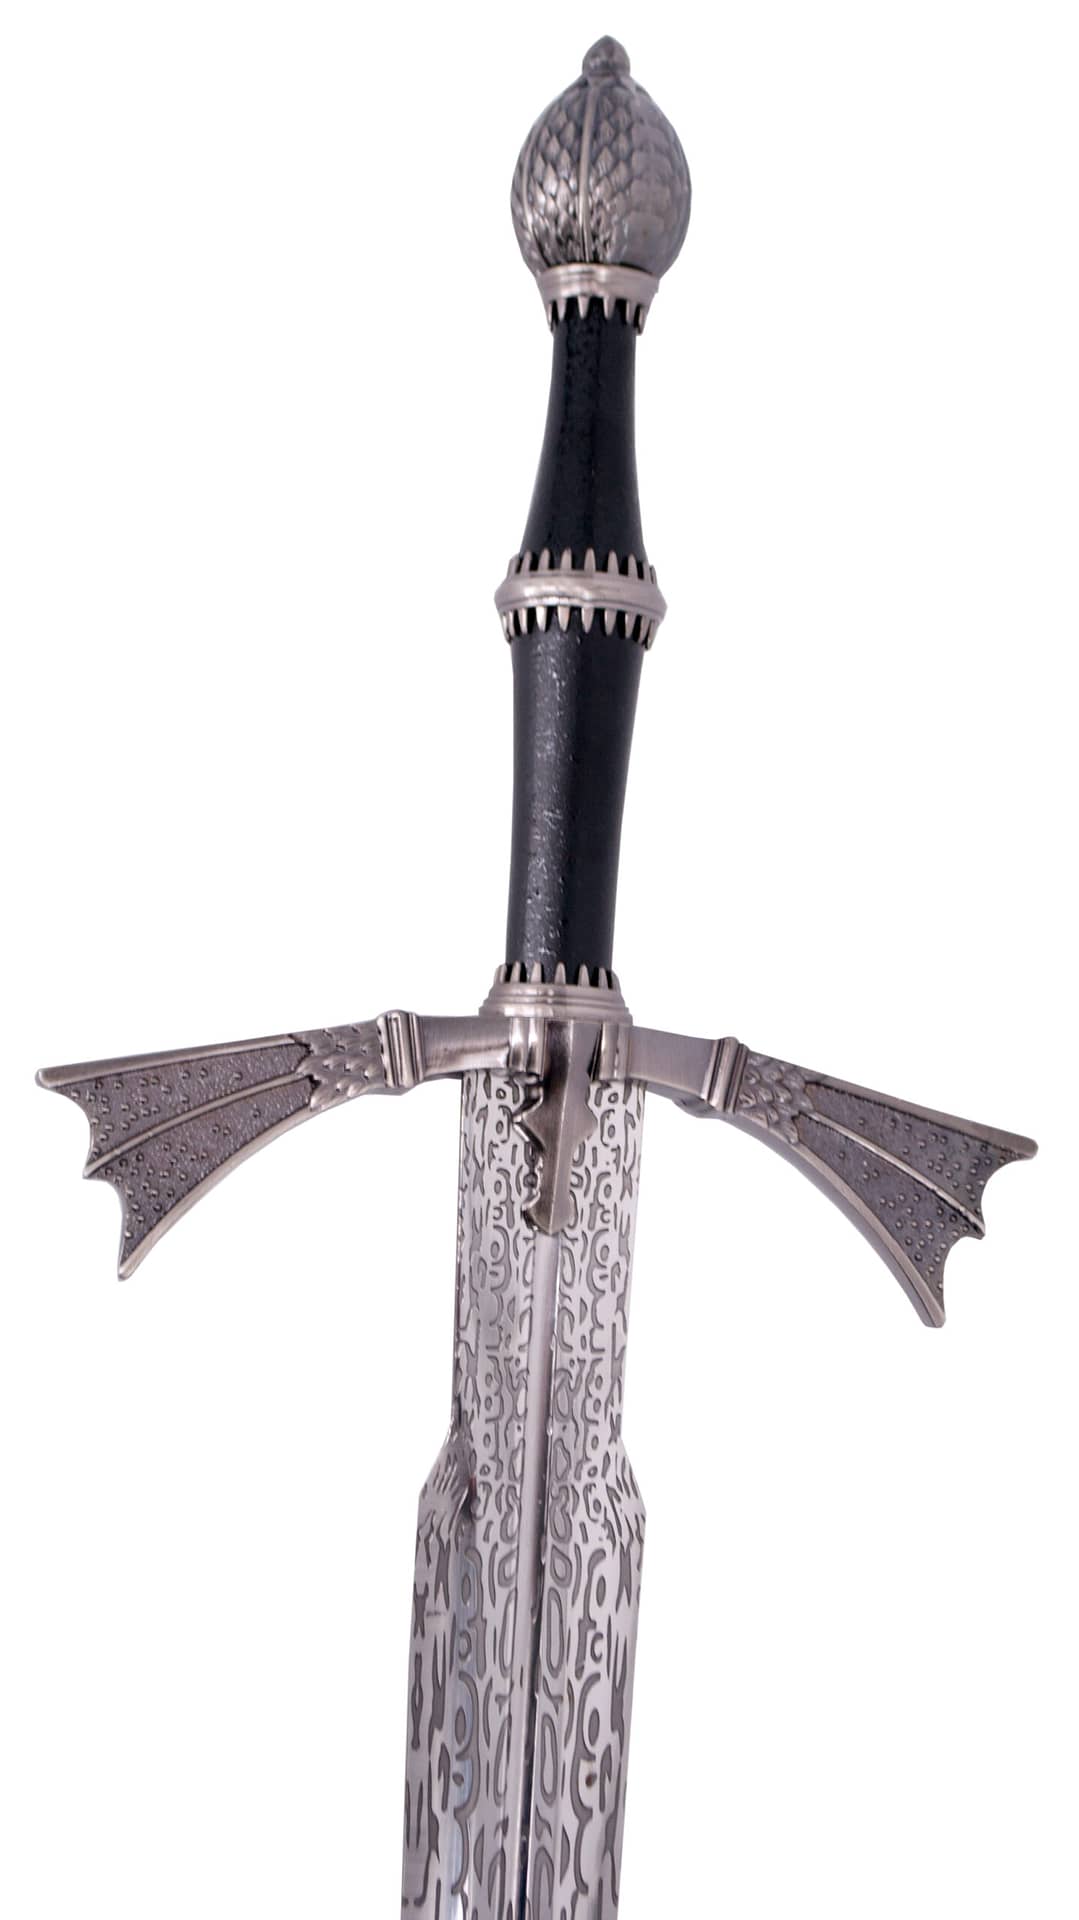 Detalle del pomo y la hoja de la Espada de fantasía de Daemon Targaryen de La Casa del Dragón. Vendida por Espadas y más